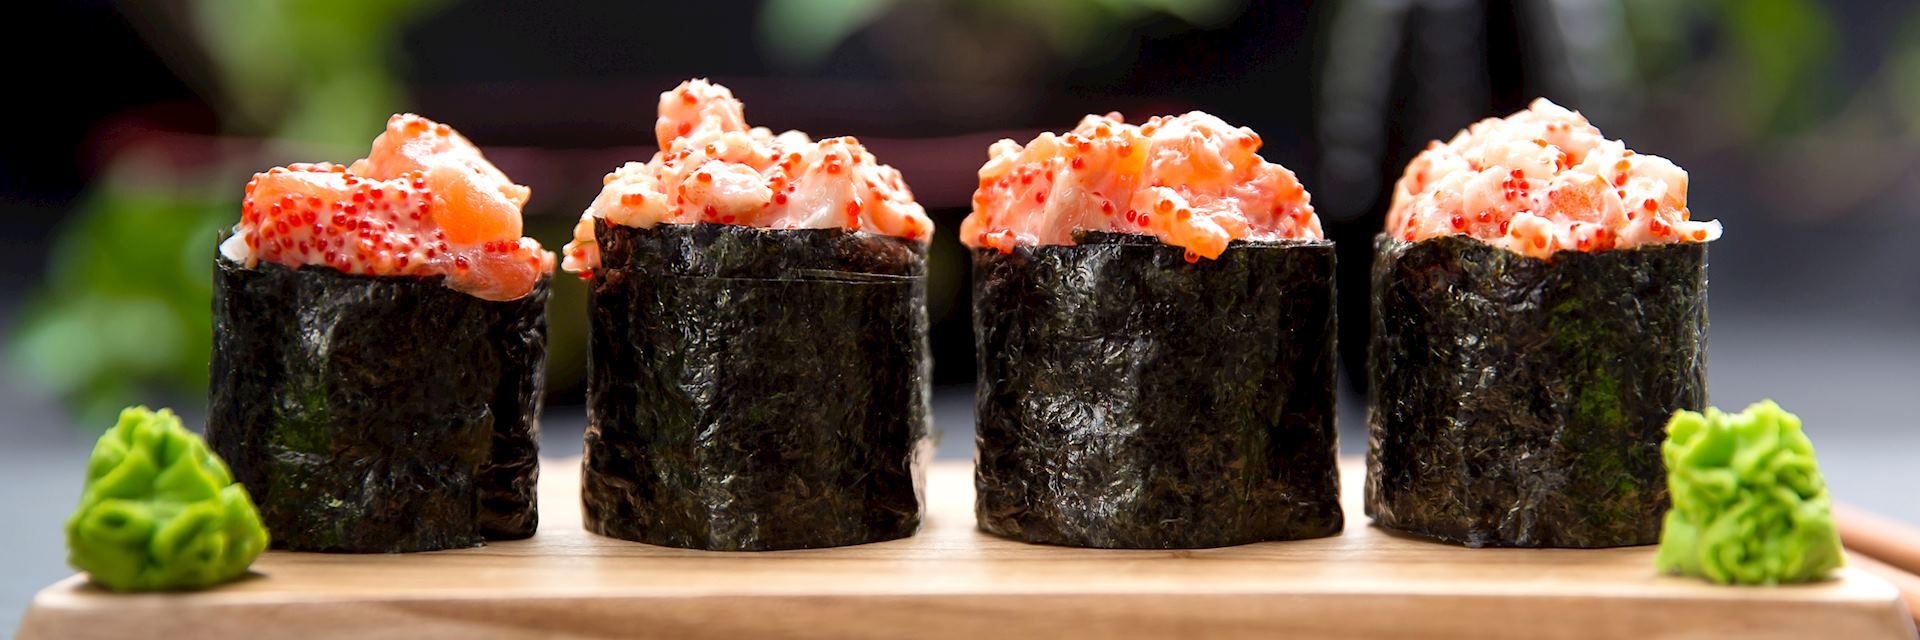 Sushi Gunkan mako with crab and salmon